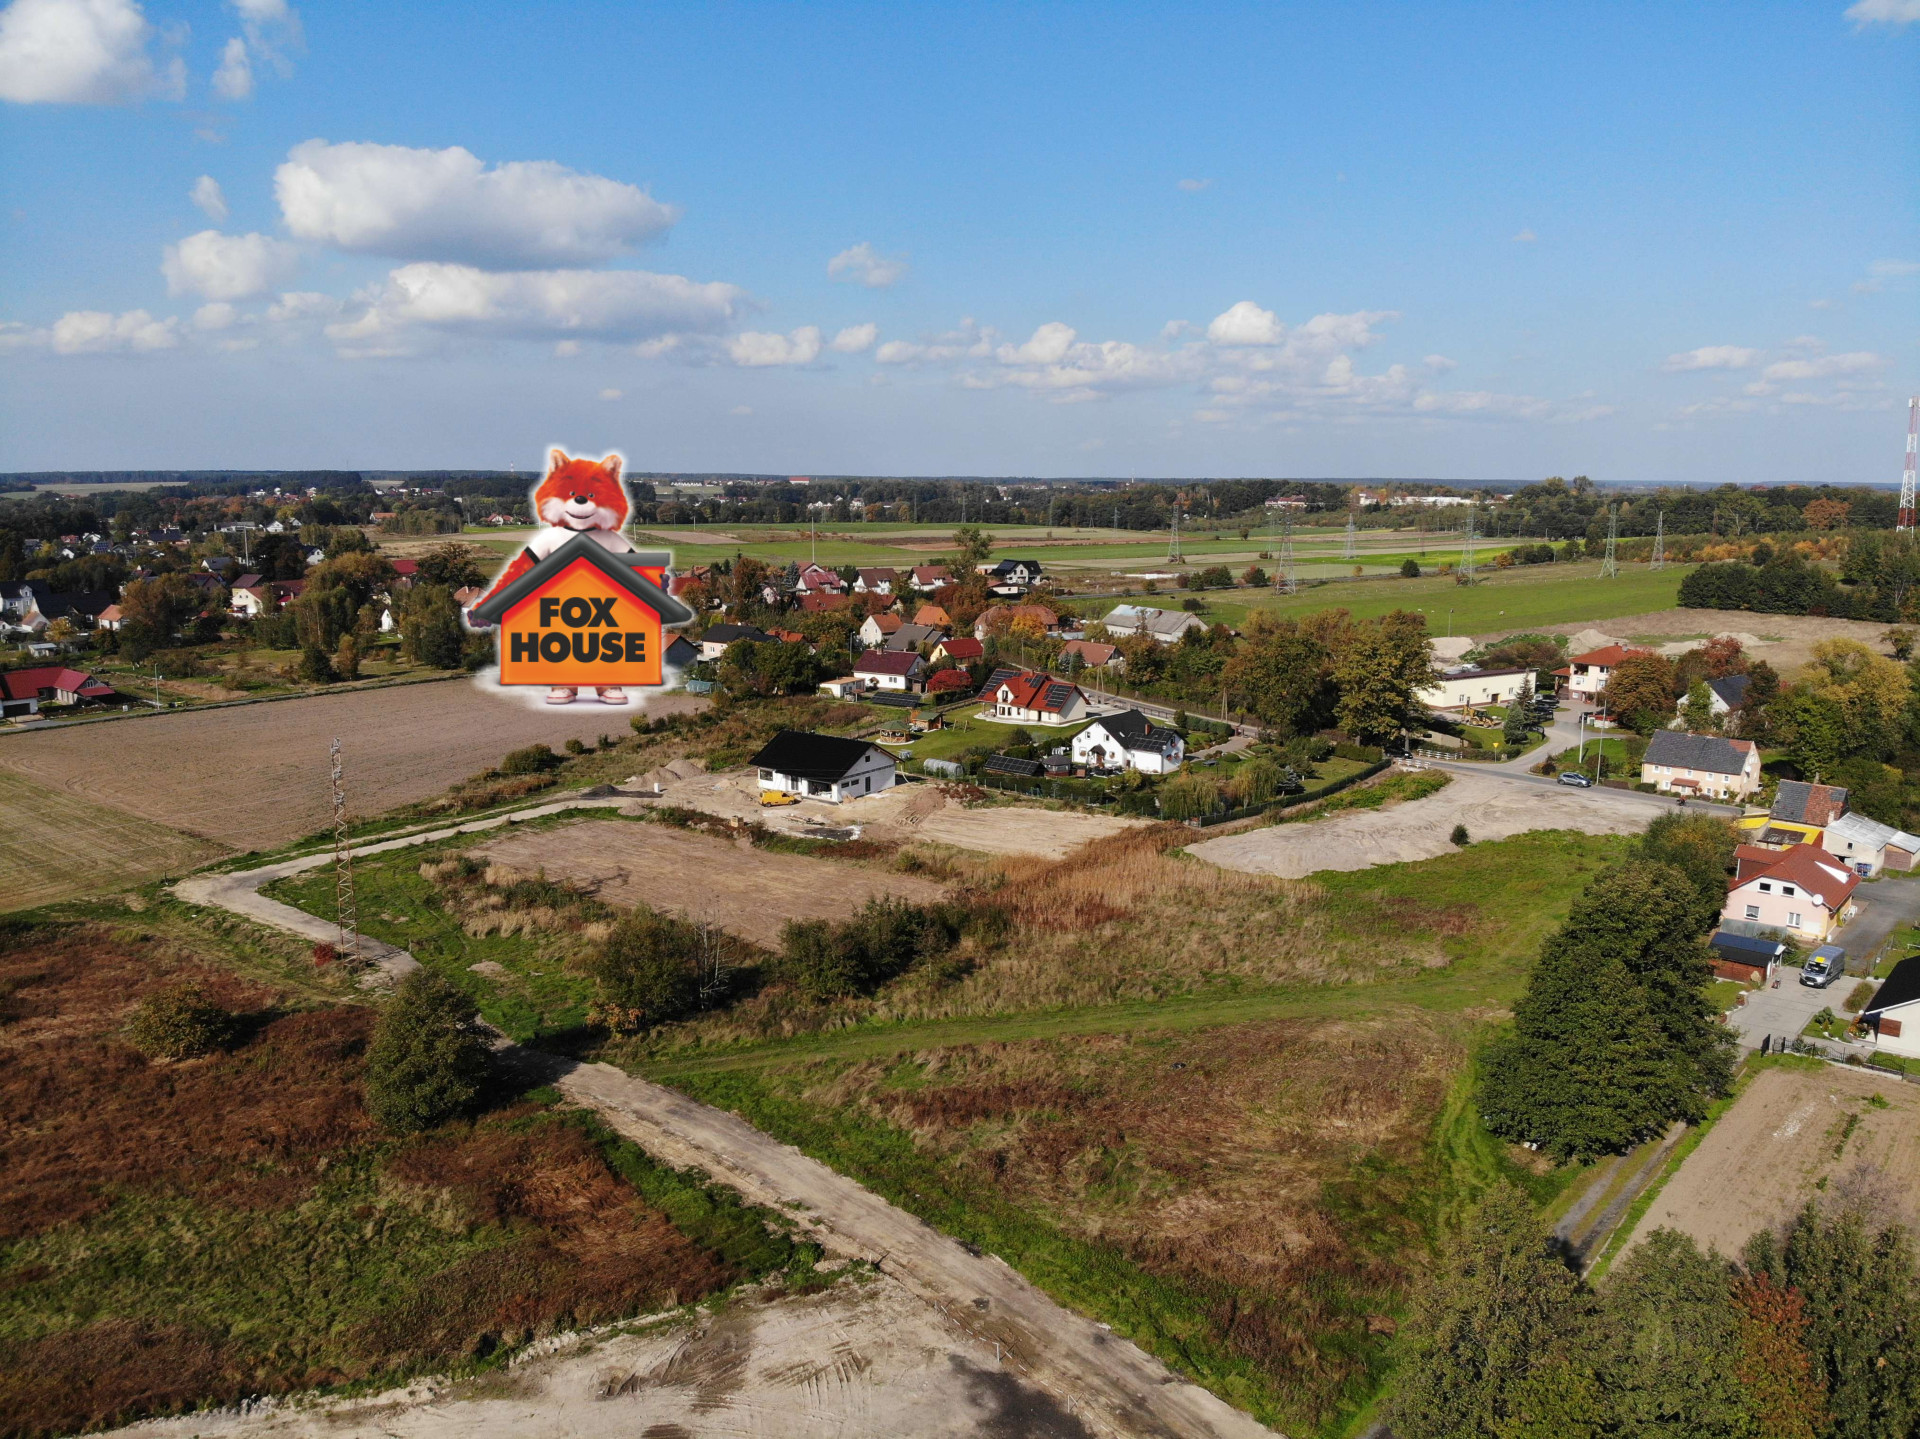 Działki budowlane pod miastem – 4km od centrum Bolesławca